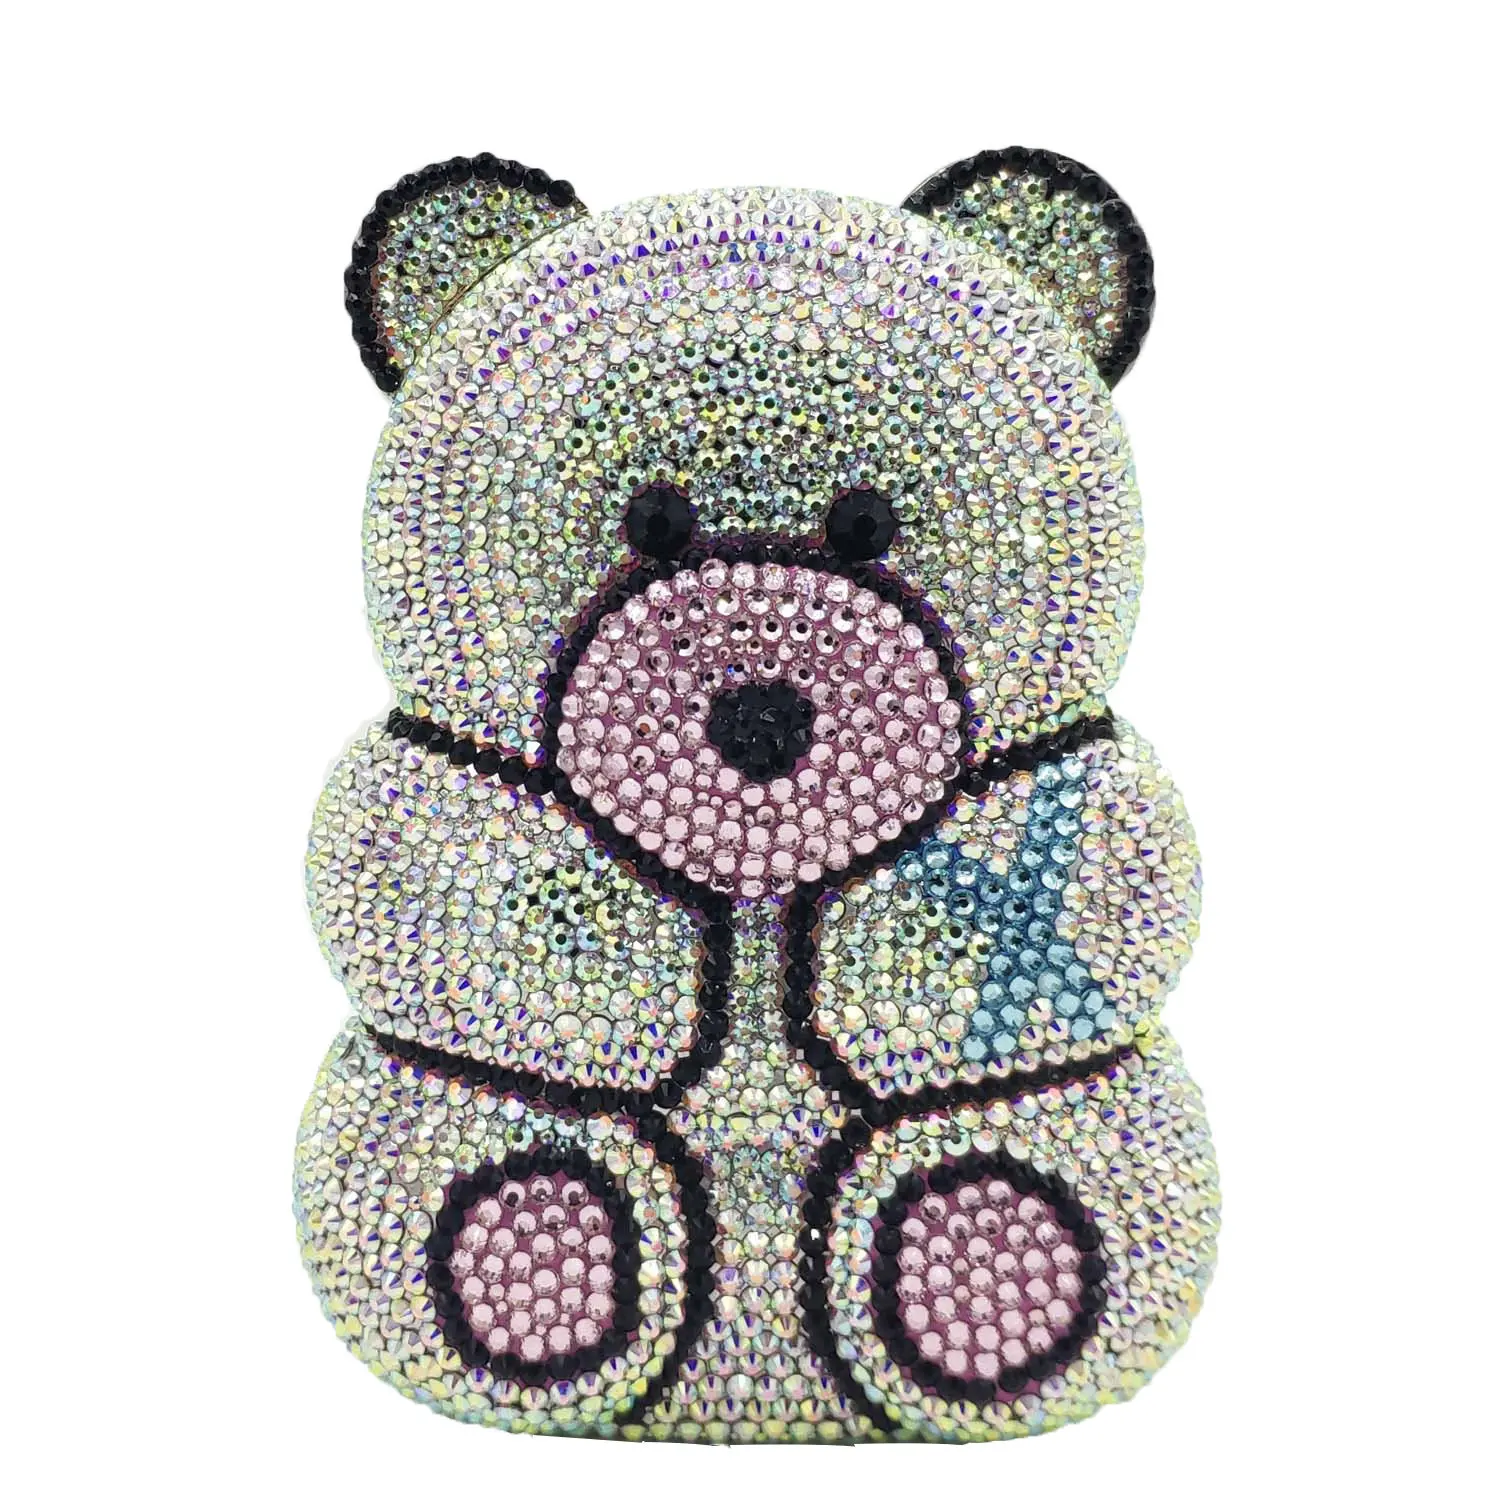 Teddy Bear Handbags 